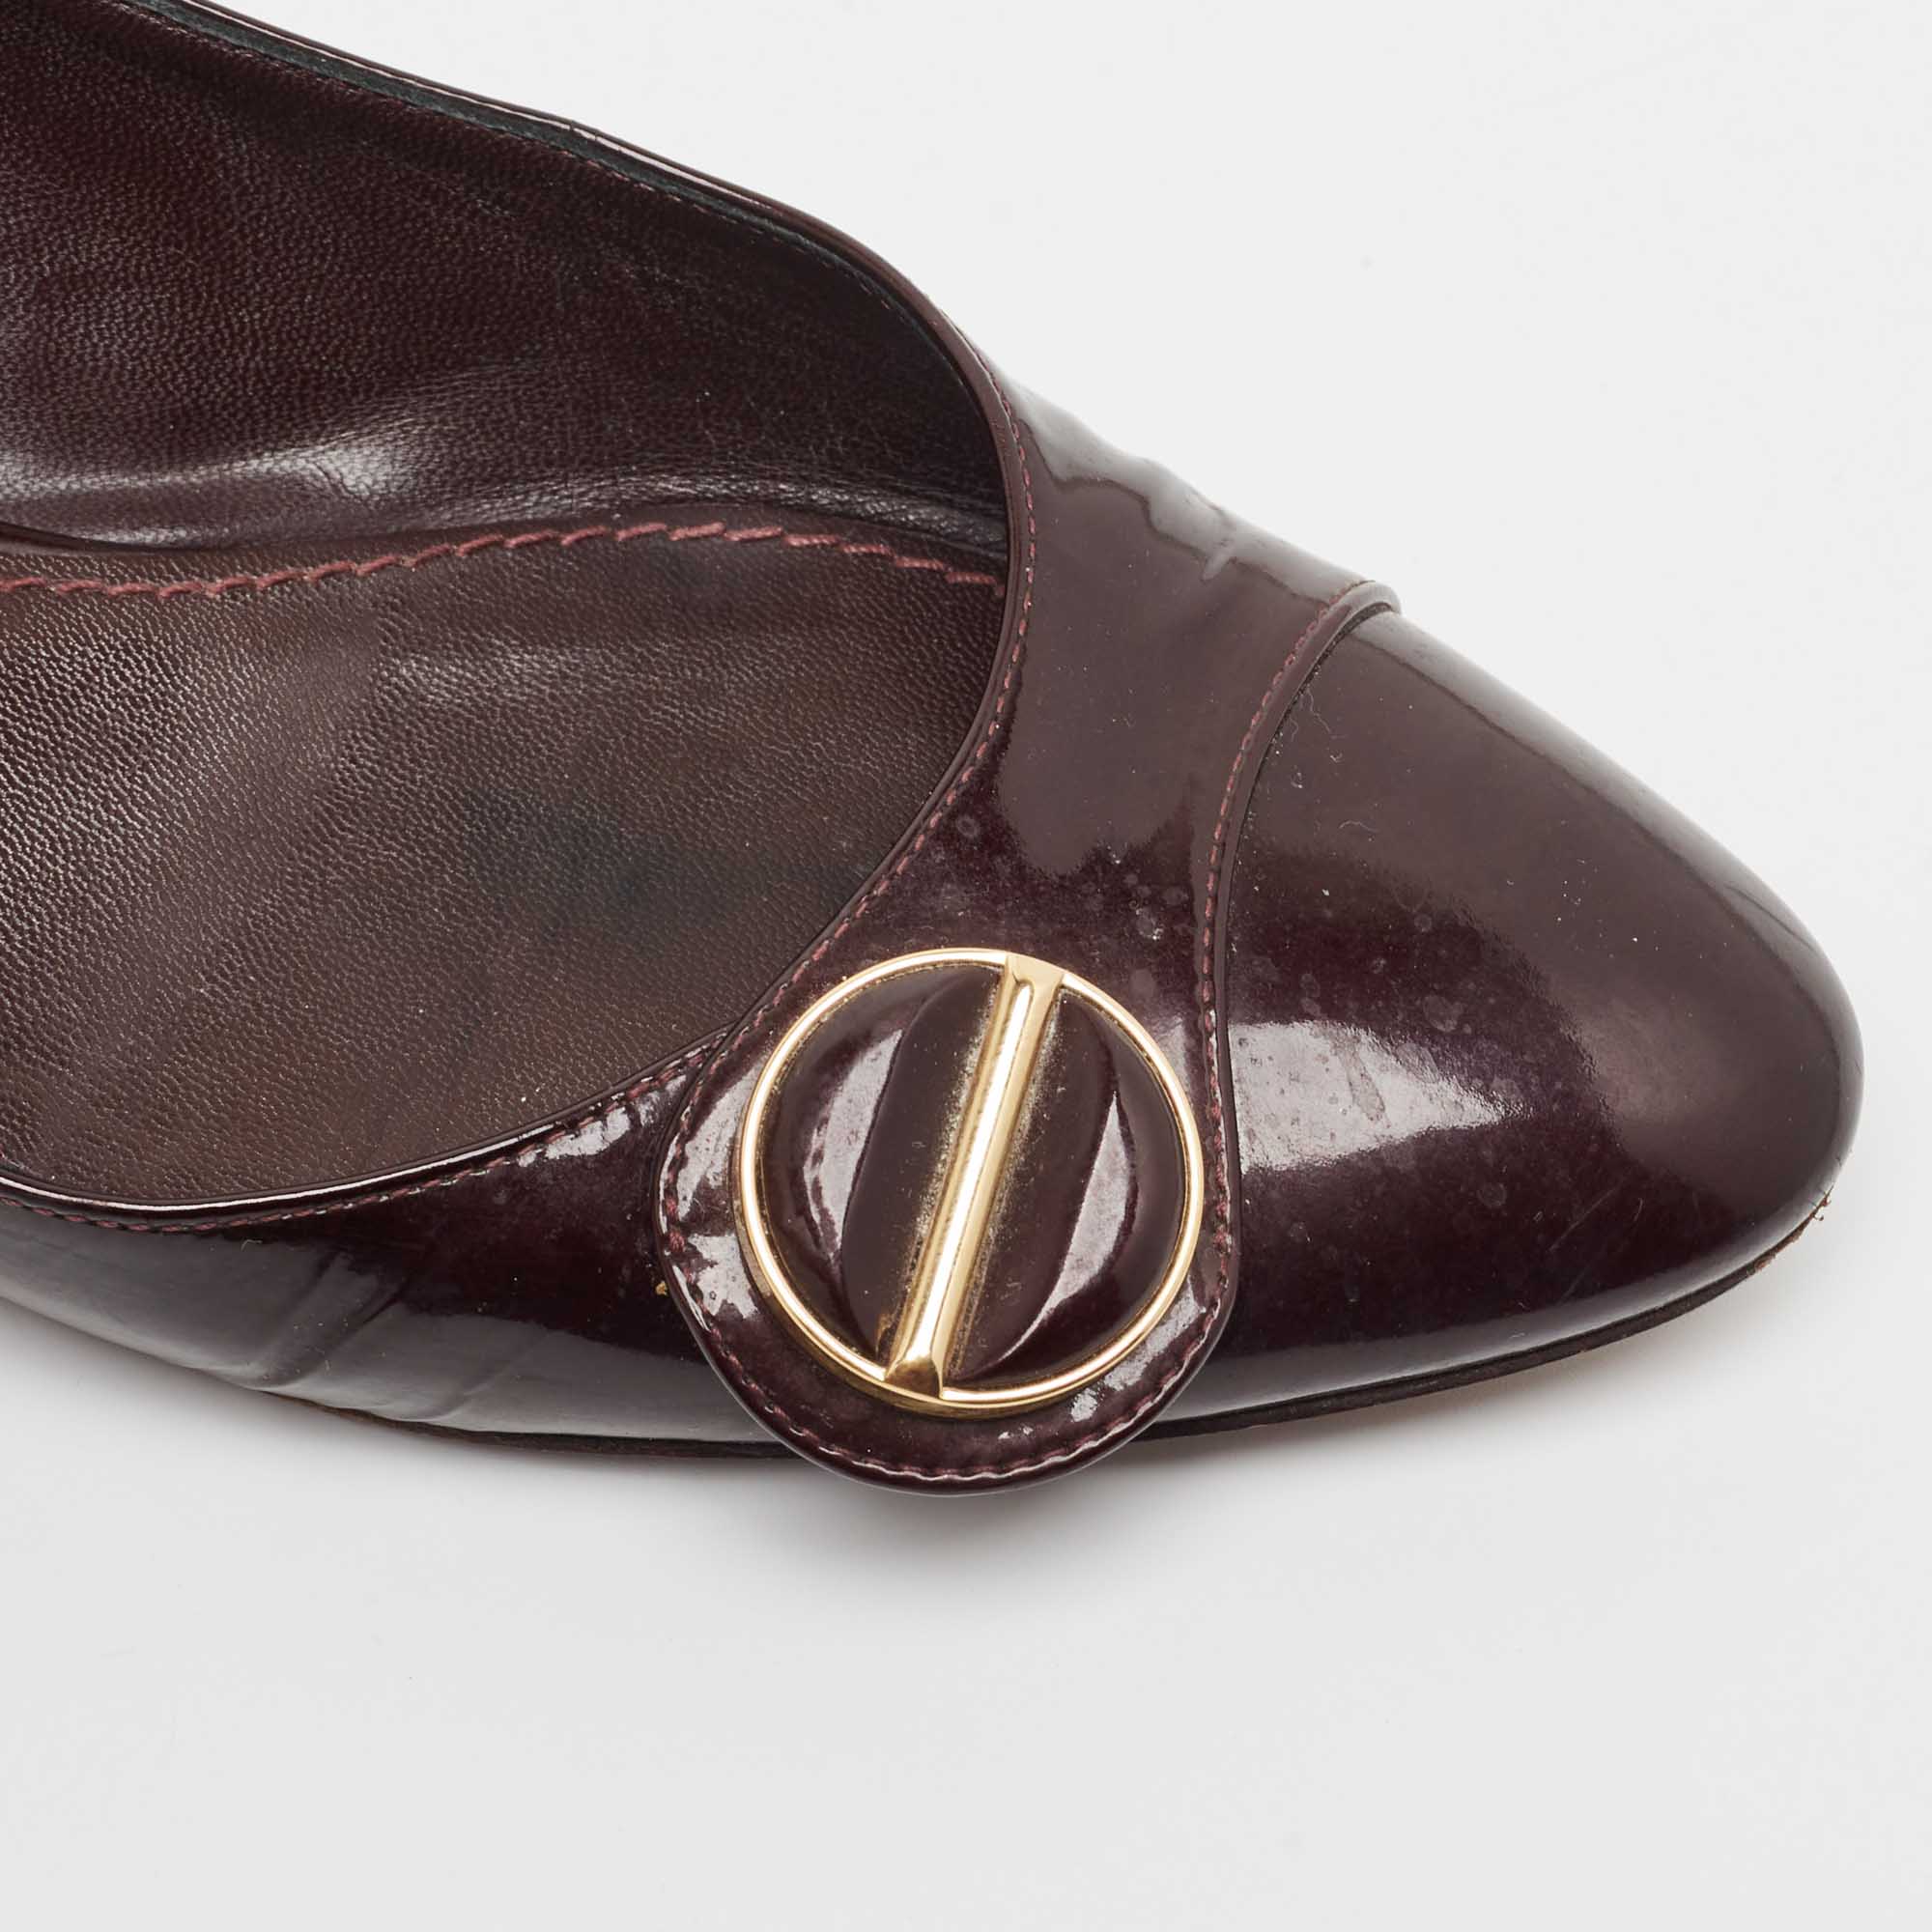 Louis Vuitton Burgundy Patent Leather Ballet Flats Size 37.5